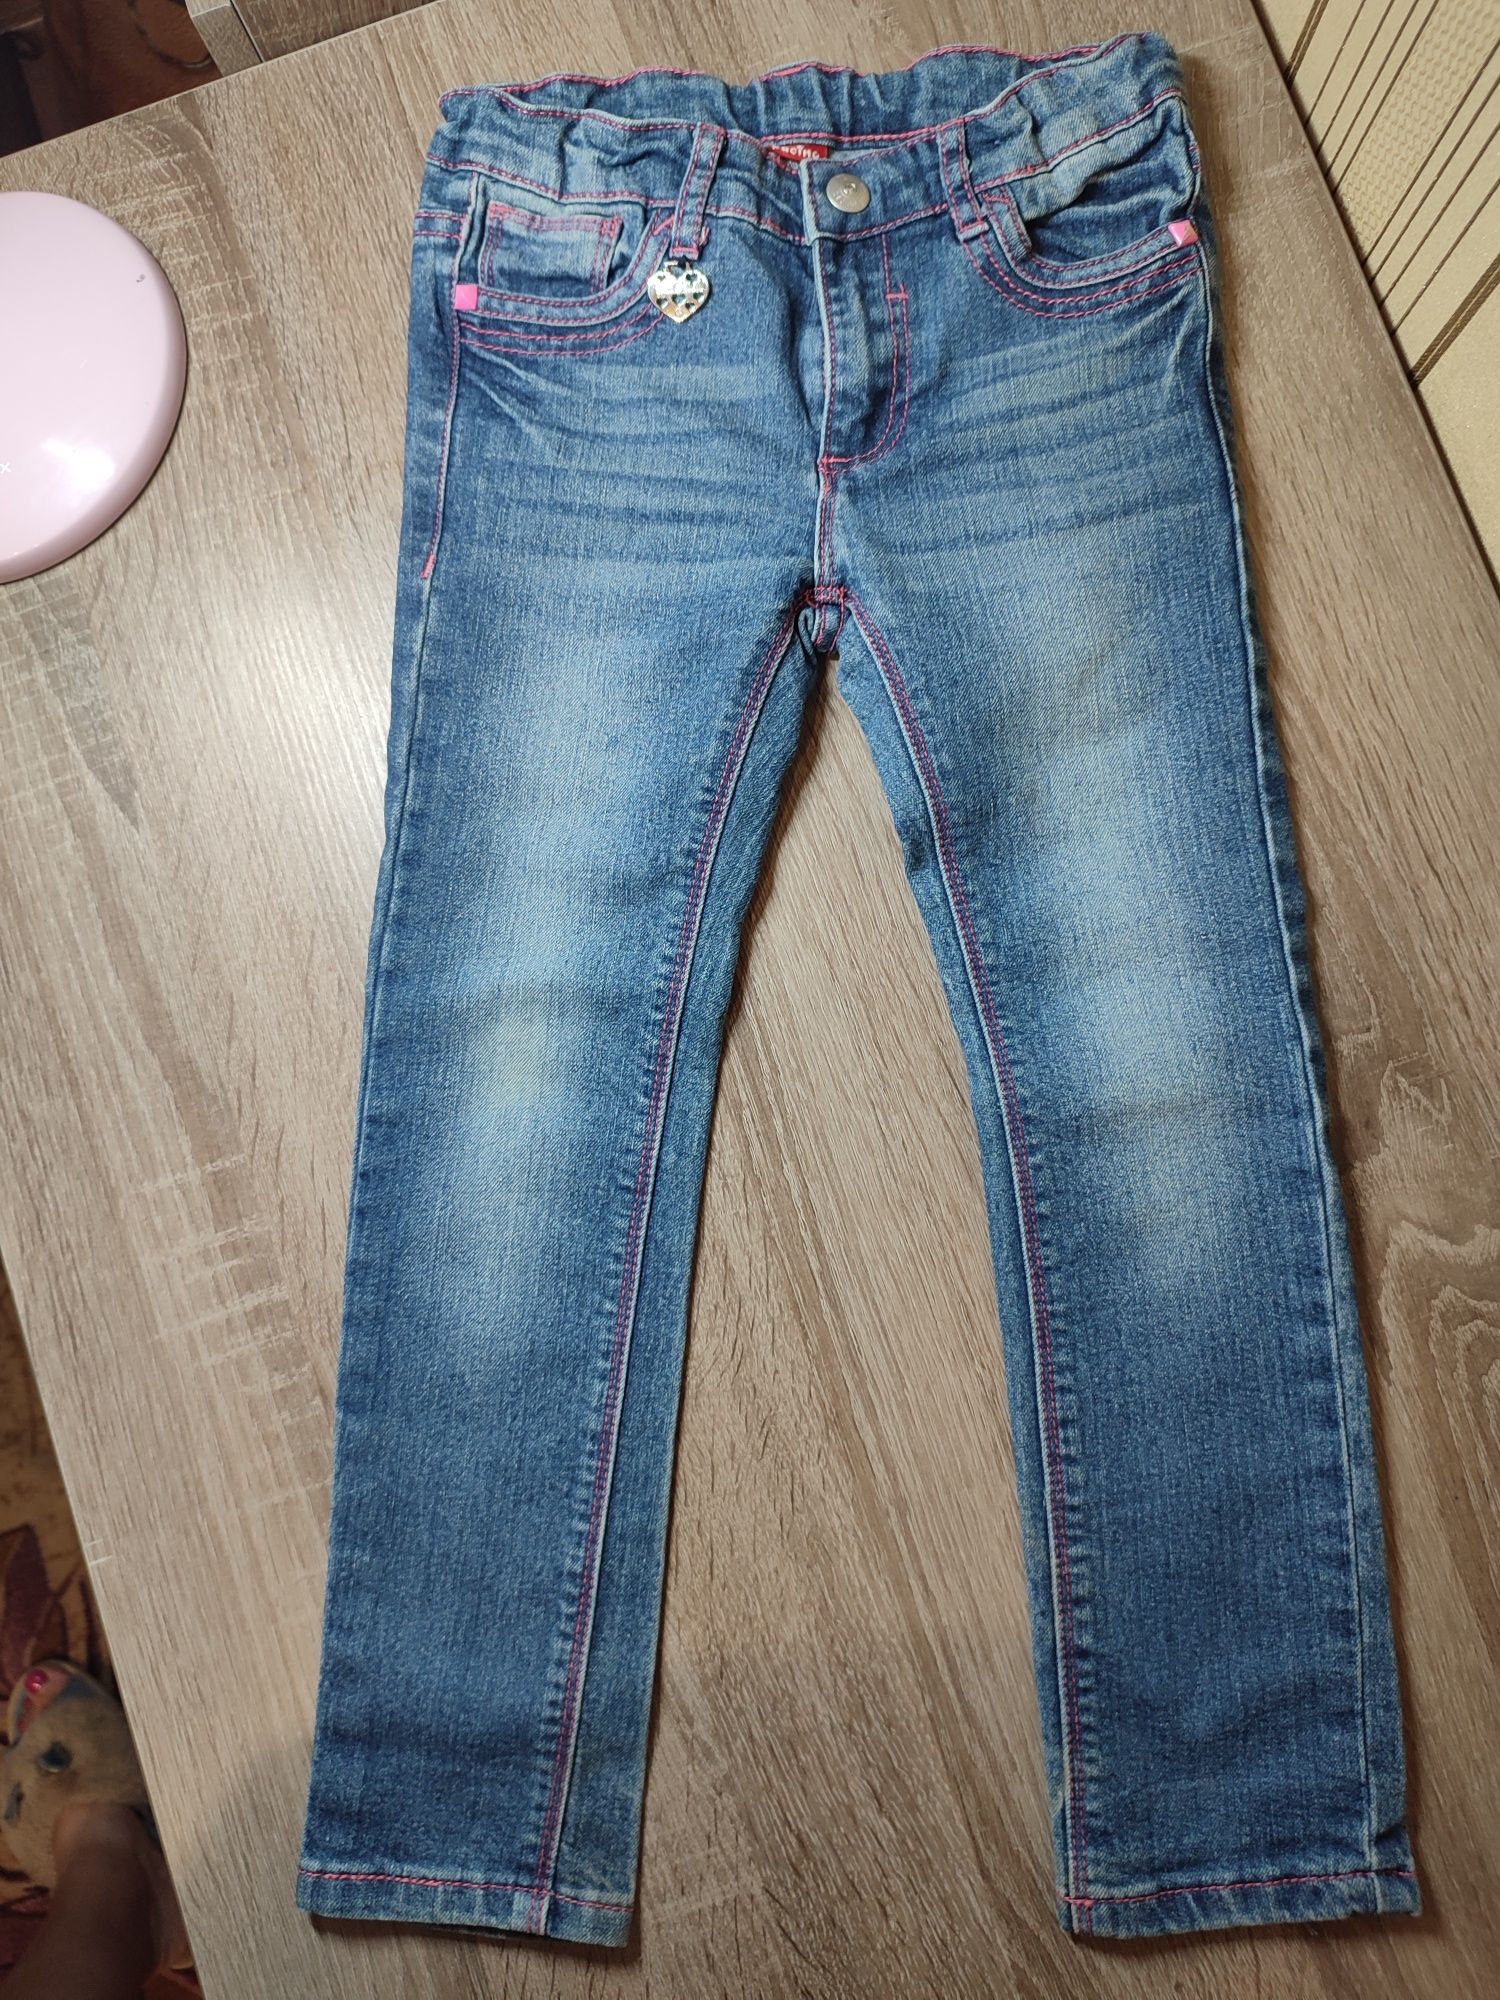 Джинсовый пиджак джинсы рост 110 см, возраст 6-7 лет